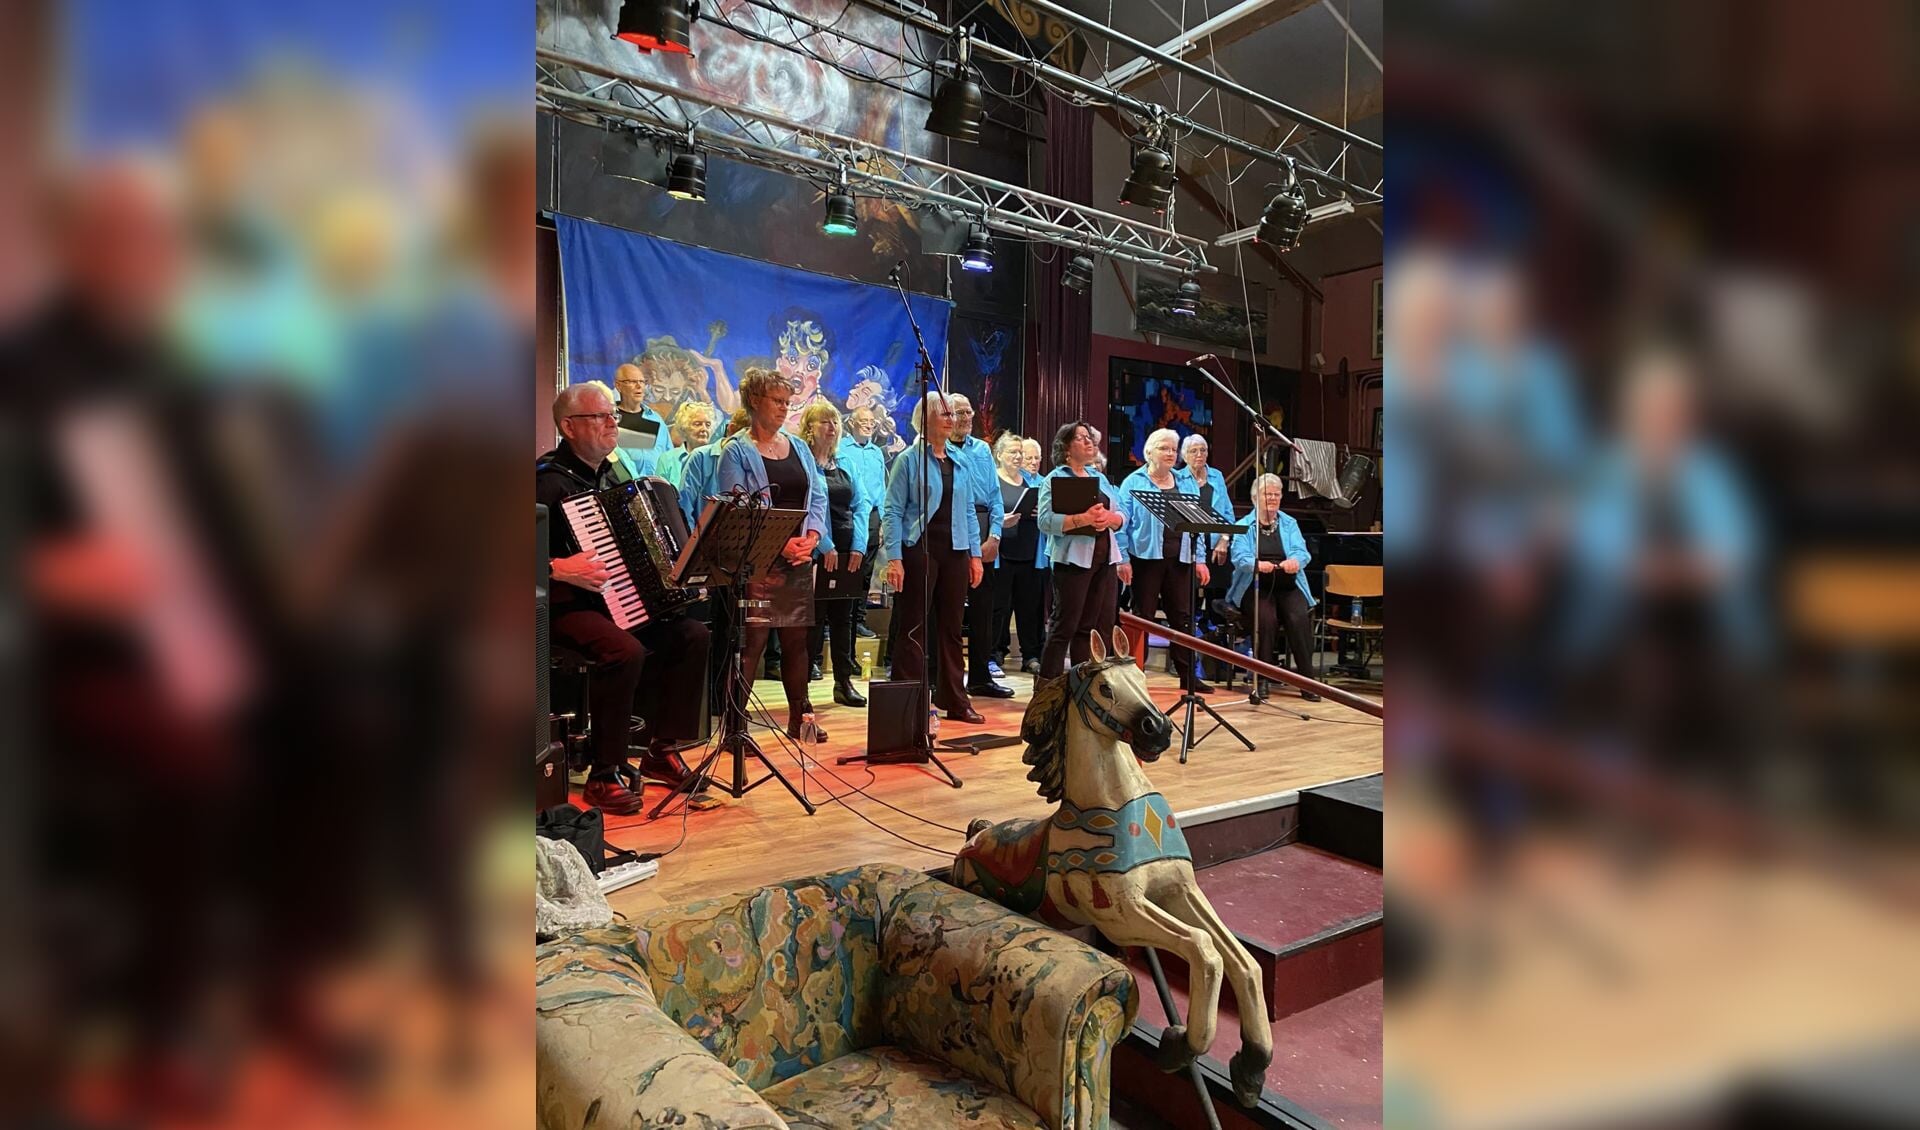 De Klankentappers is een oergezellig koor uit Sint Maartensbrug.